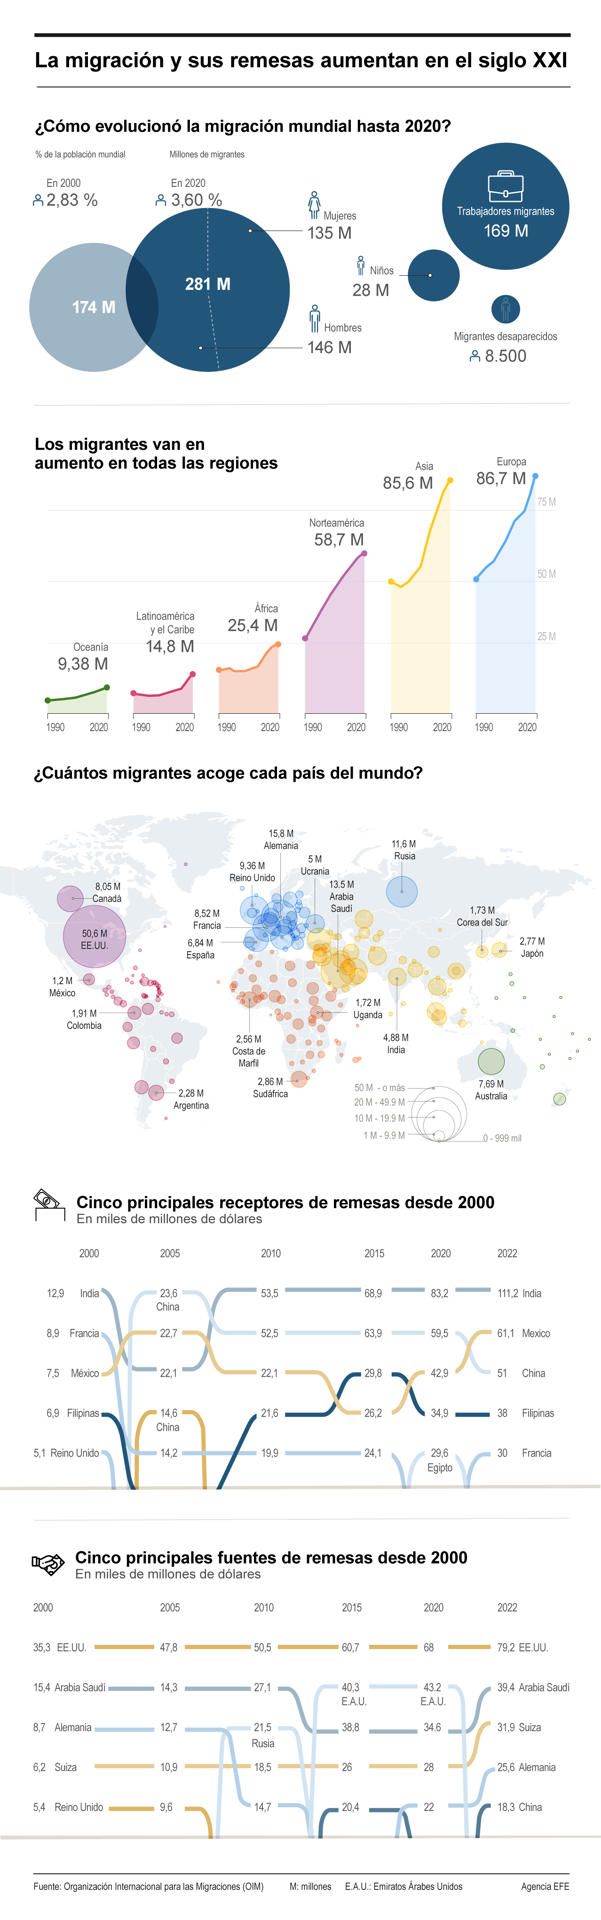 La migración y sus remesas aumentan en el siglo XXI 01 080524